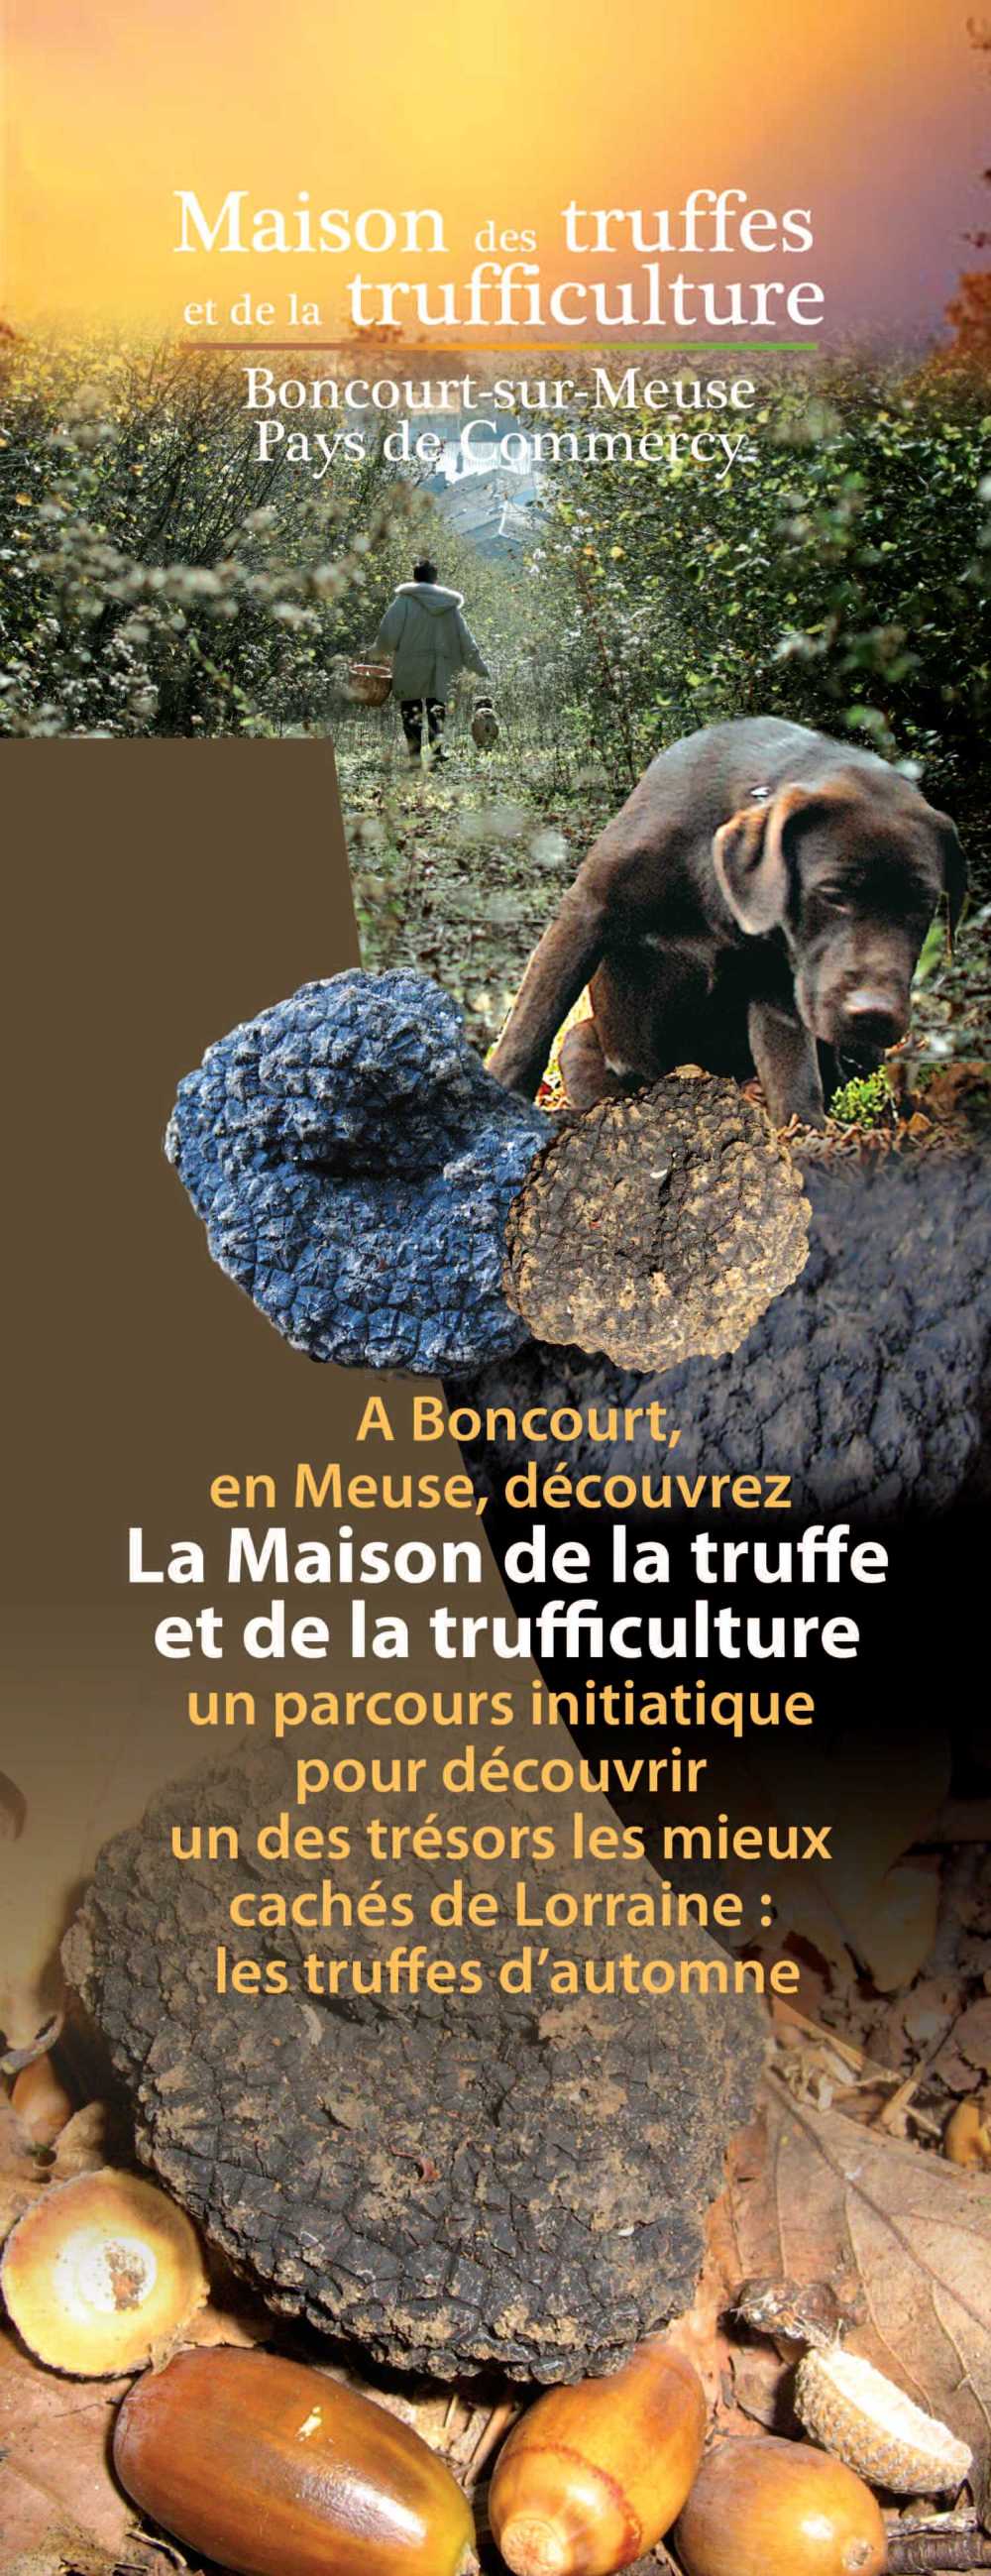 Prsentation de la maison des truffes  Boncourt-sur-Meuse